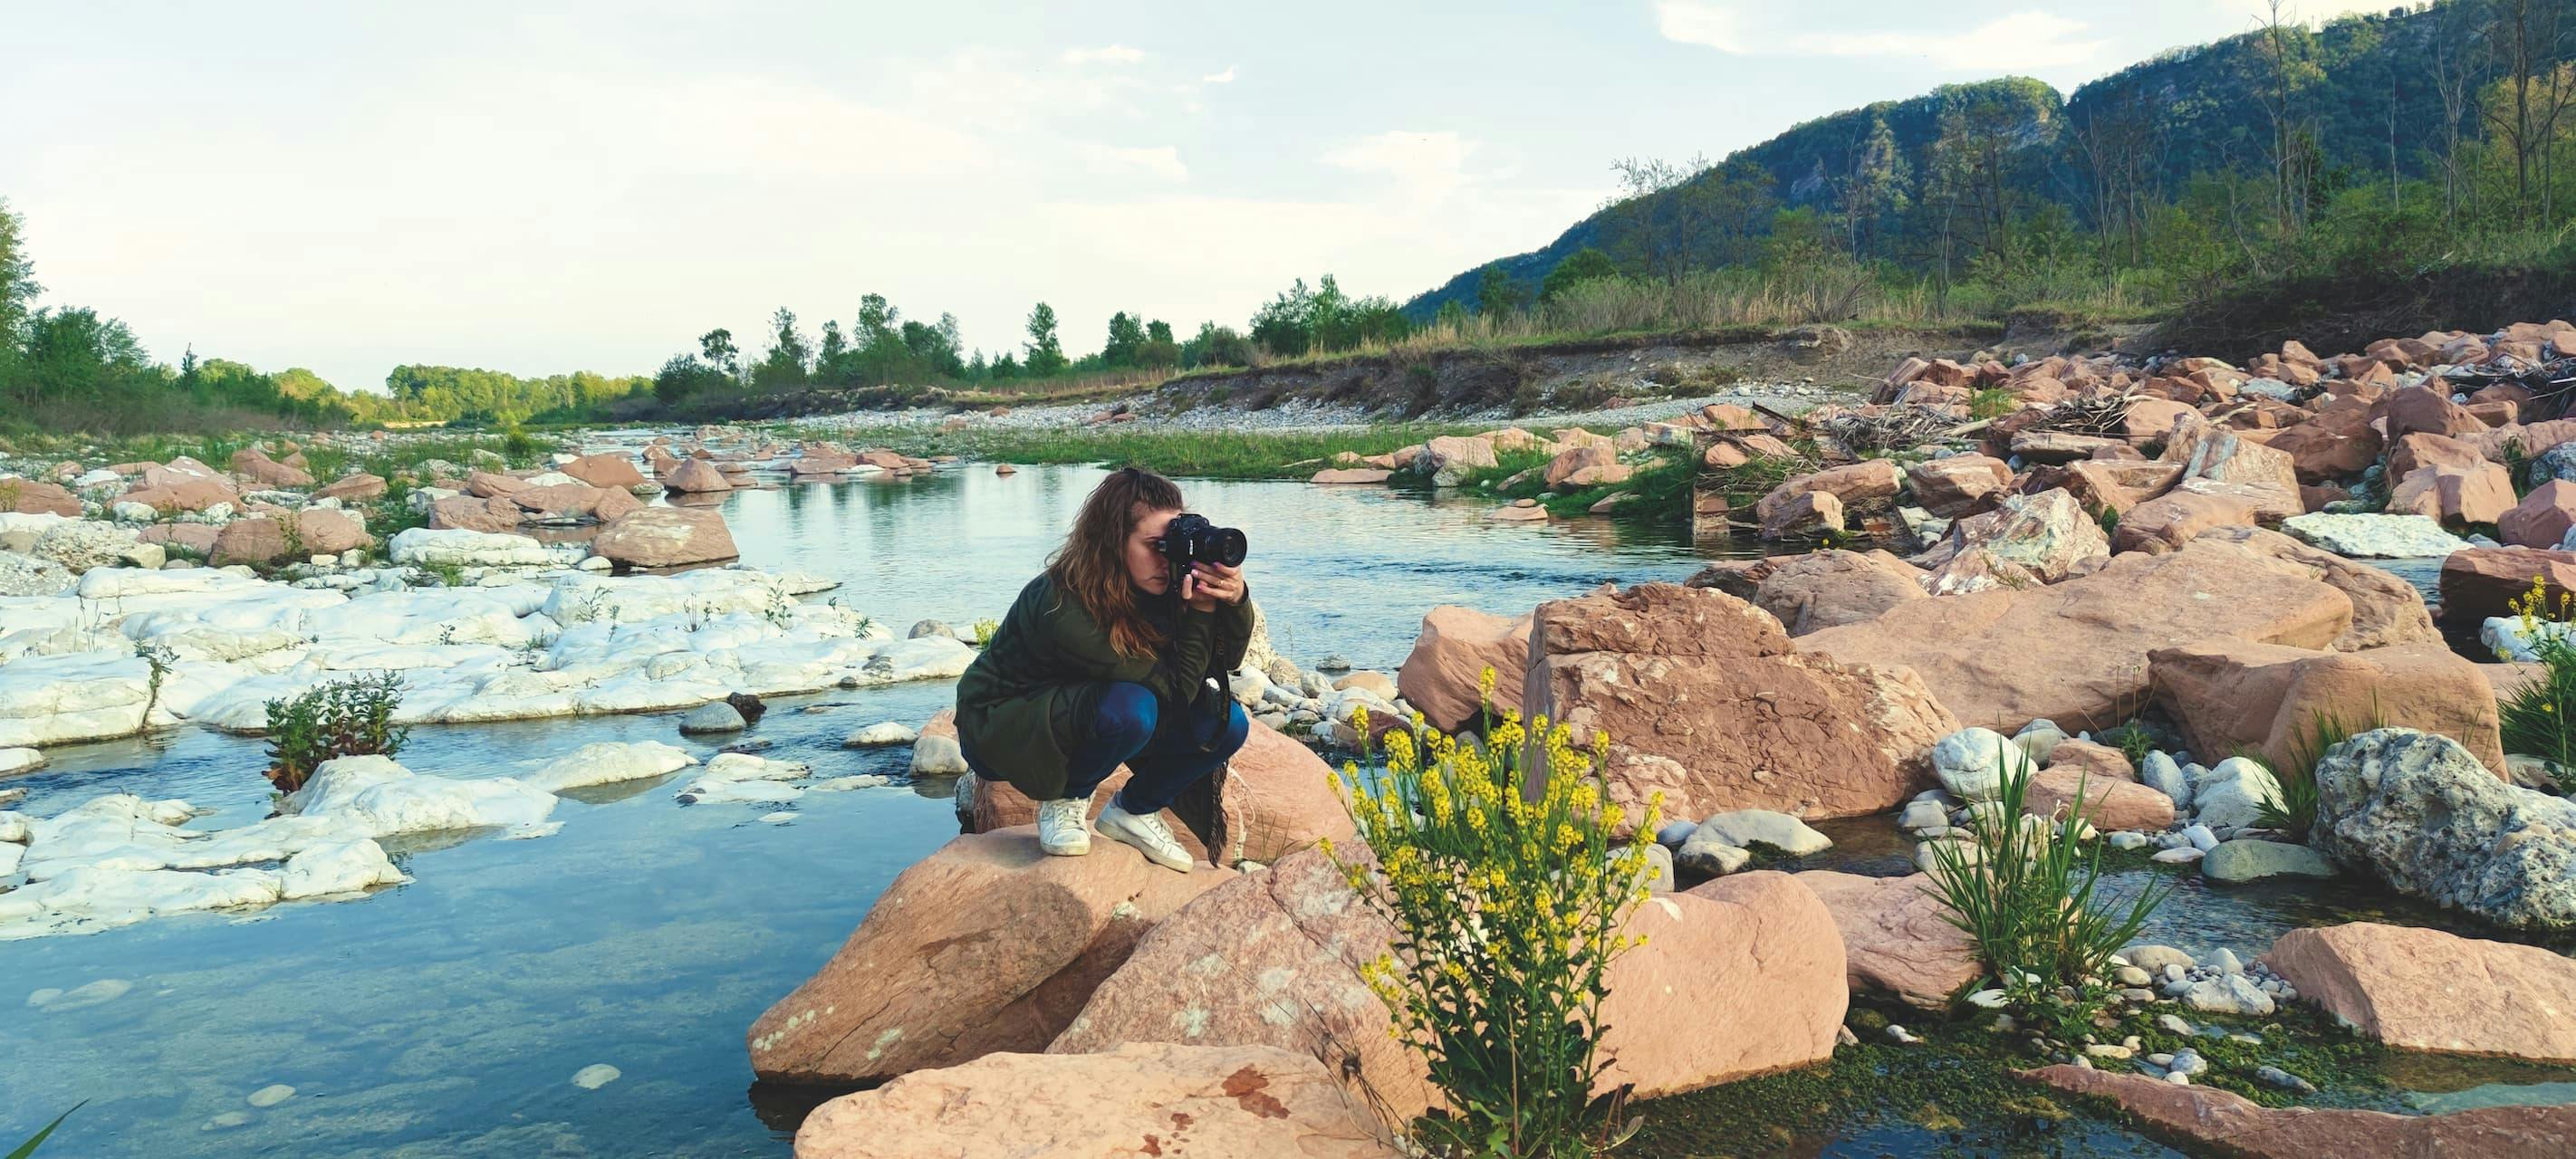 piave ragazza fotografa acqua rocce